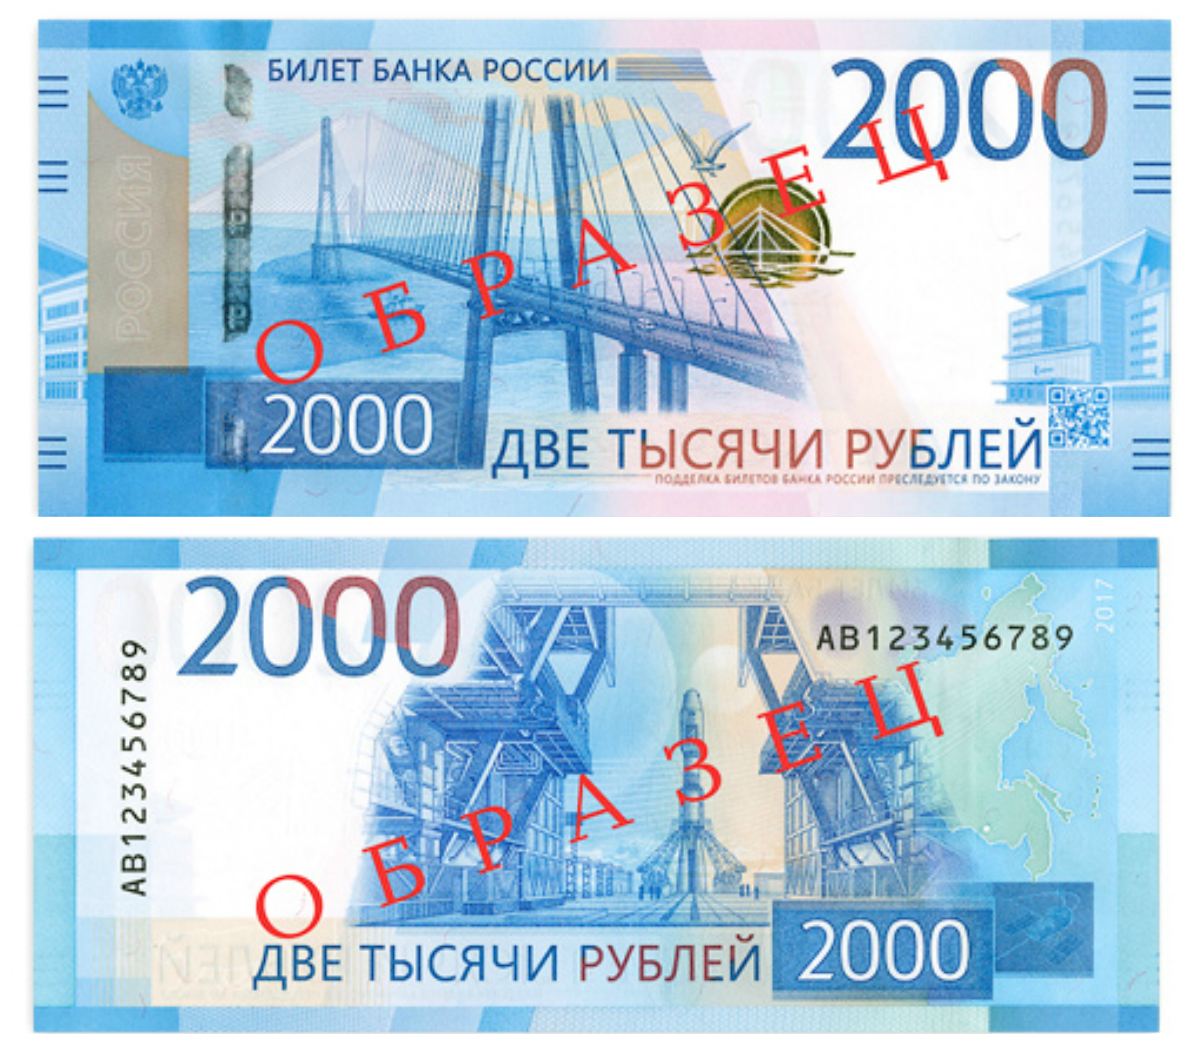 Стулья за 2000 рублей